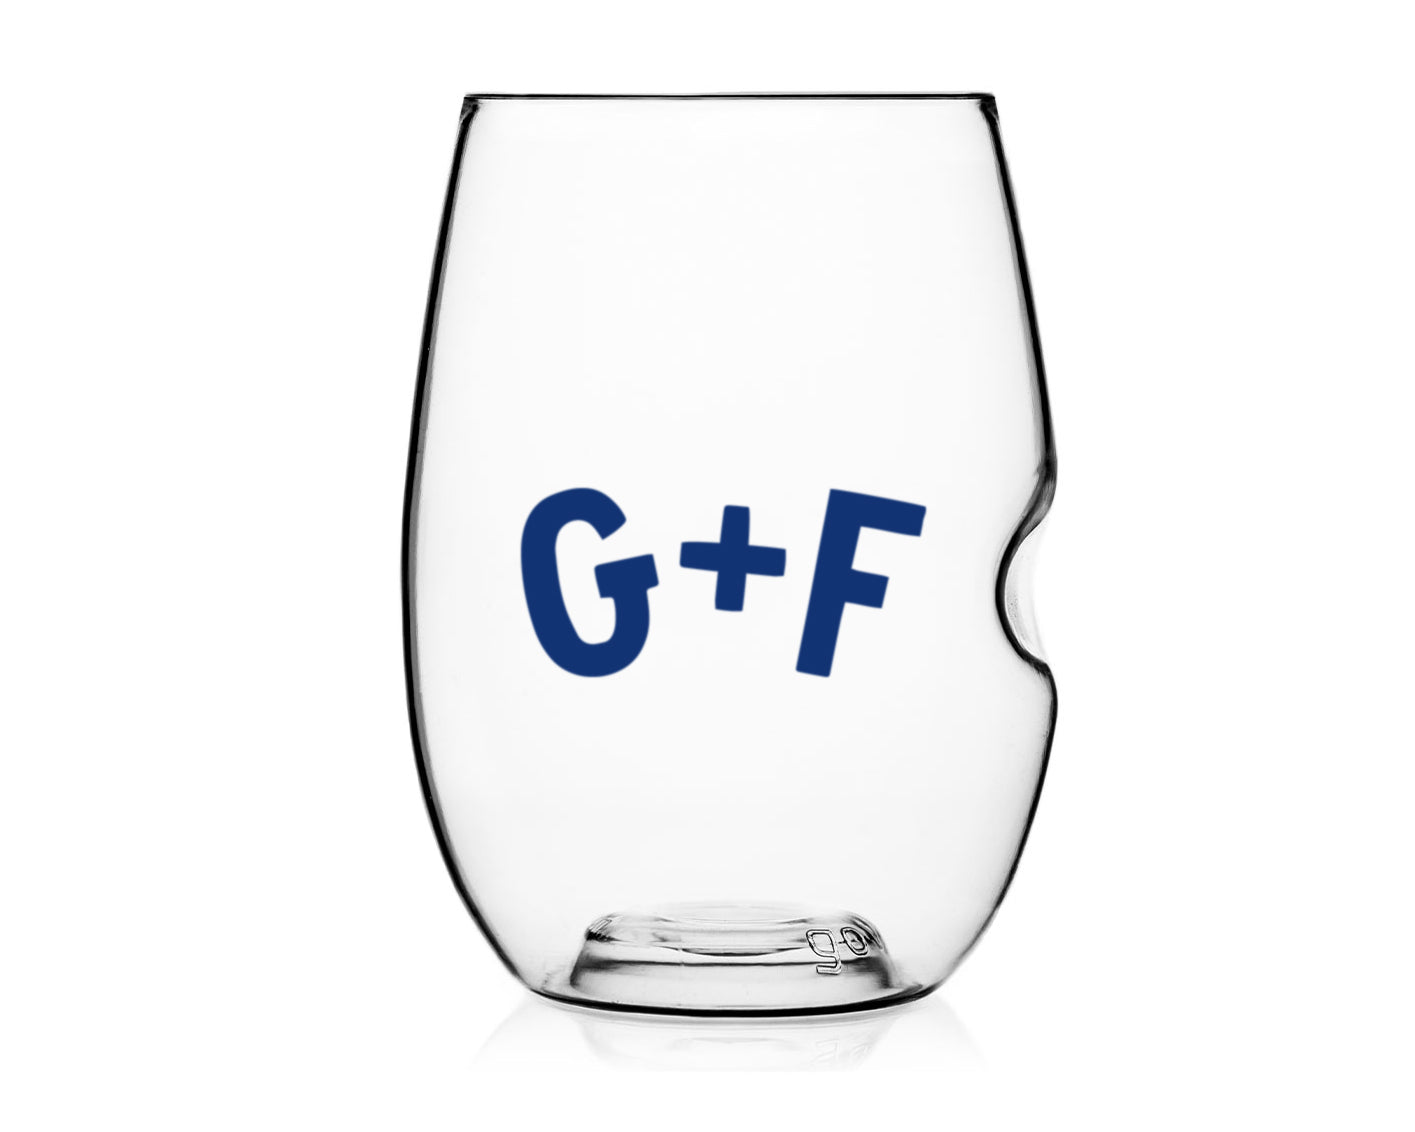 Graham + Fisk's Branded Wine Glasses